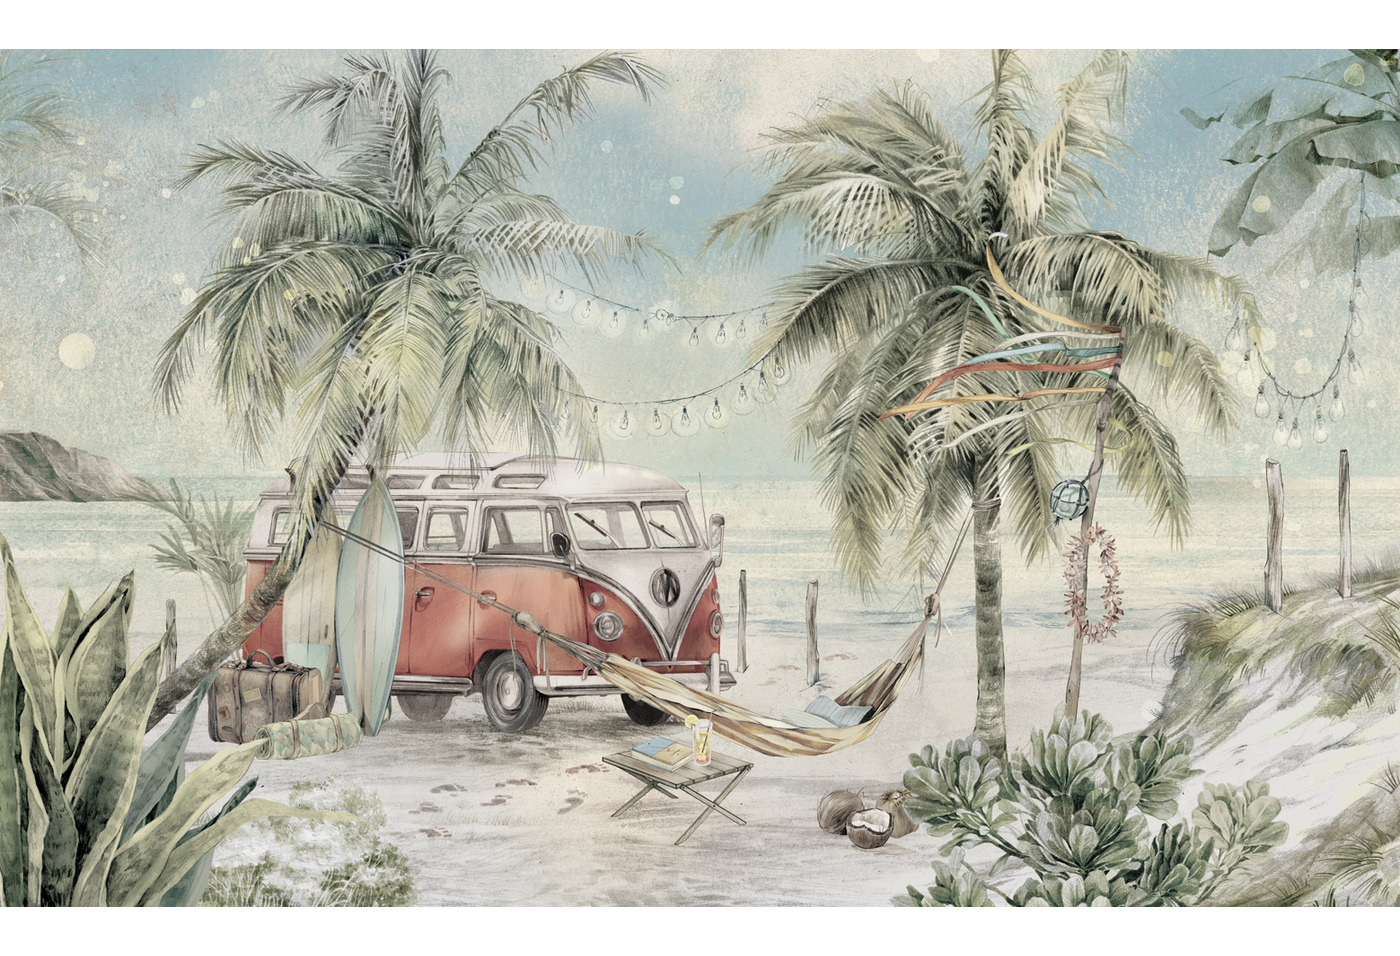 Kolorowa tapeta z wizerunkiem vana i deskami surfingowymi na tle plaży